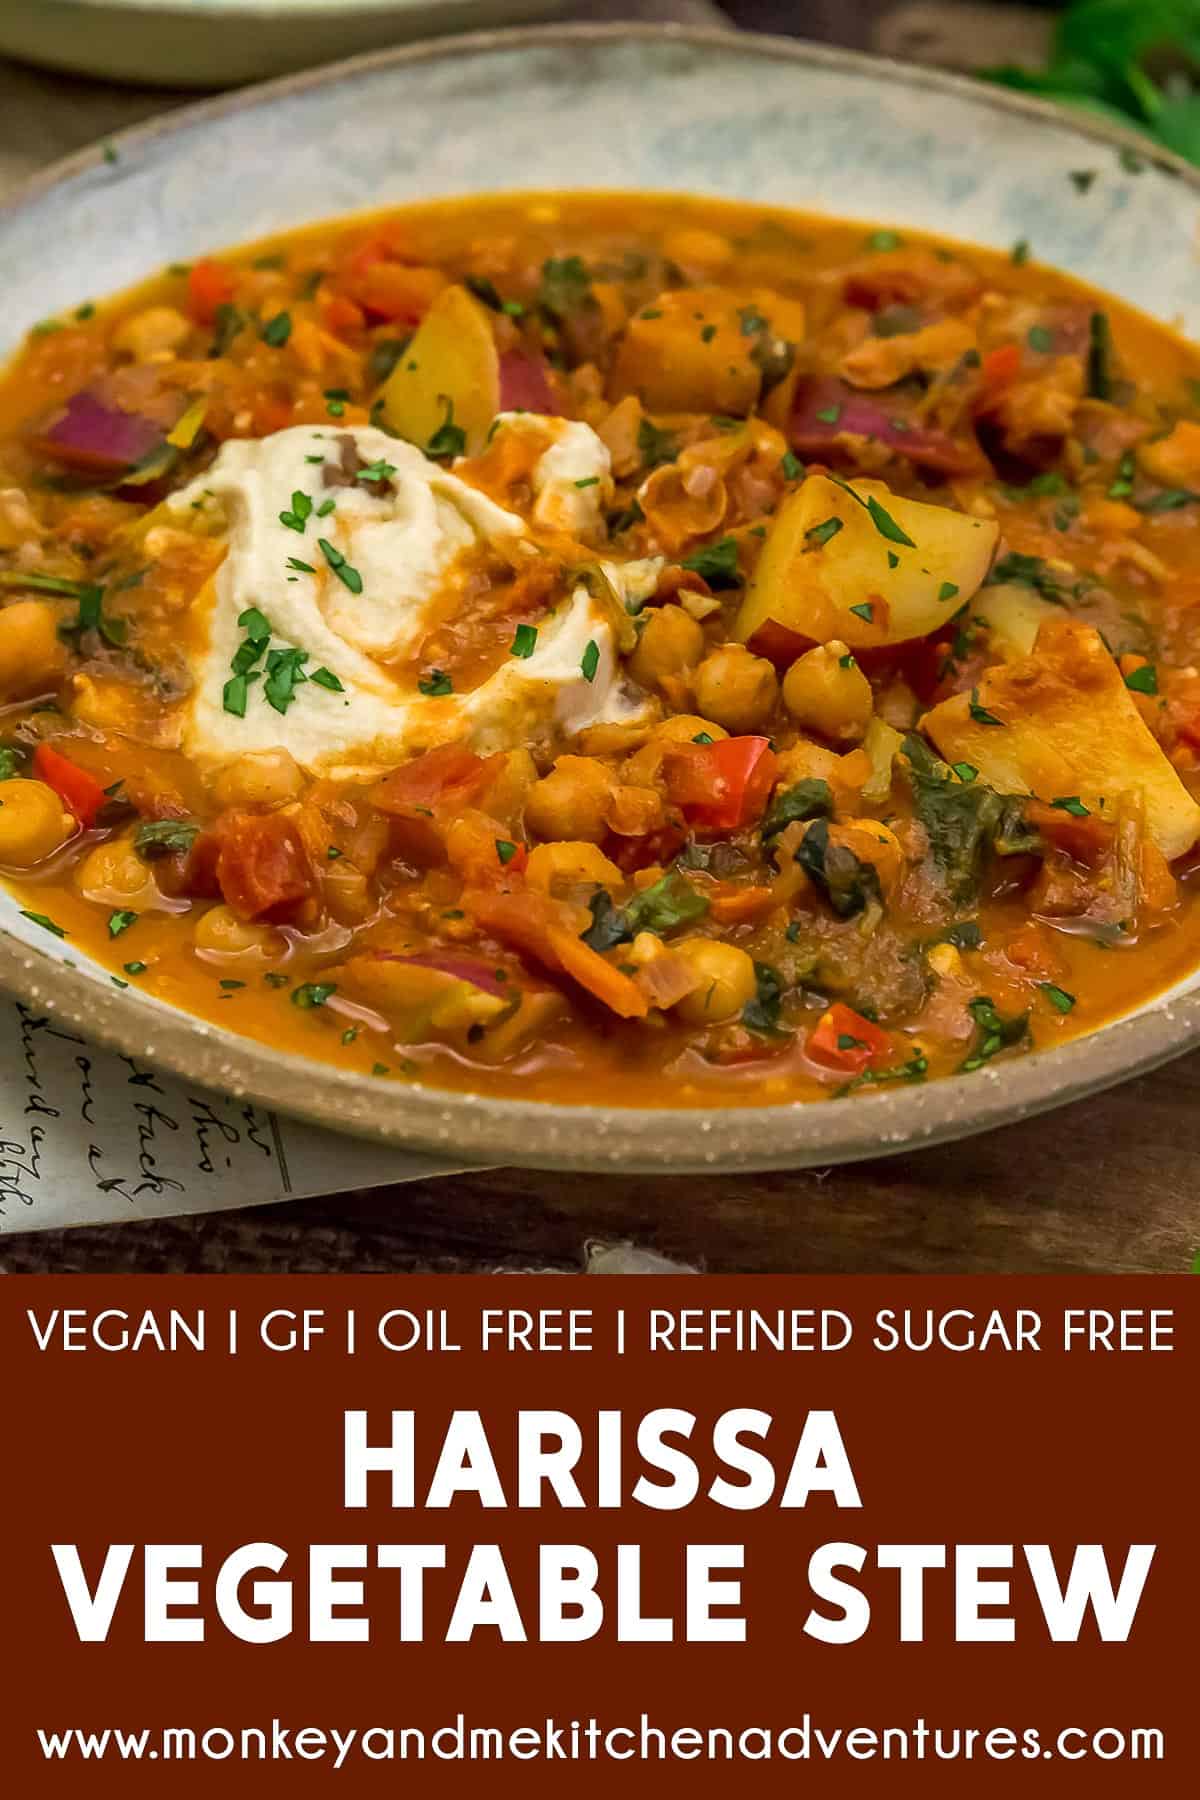 Harissa Vegetable Stew